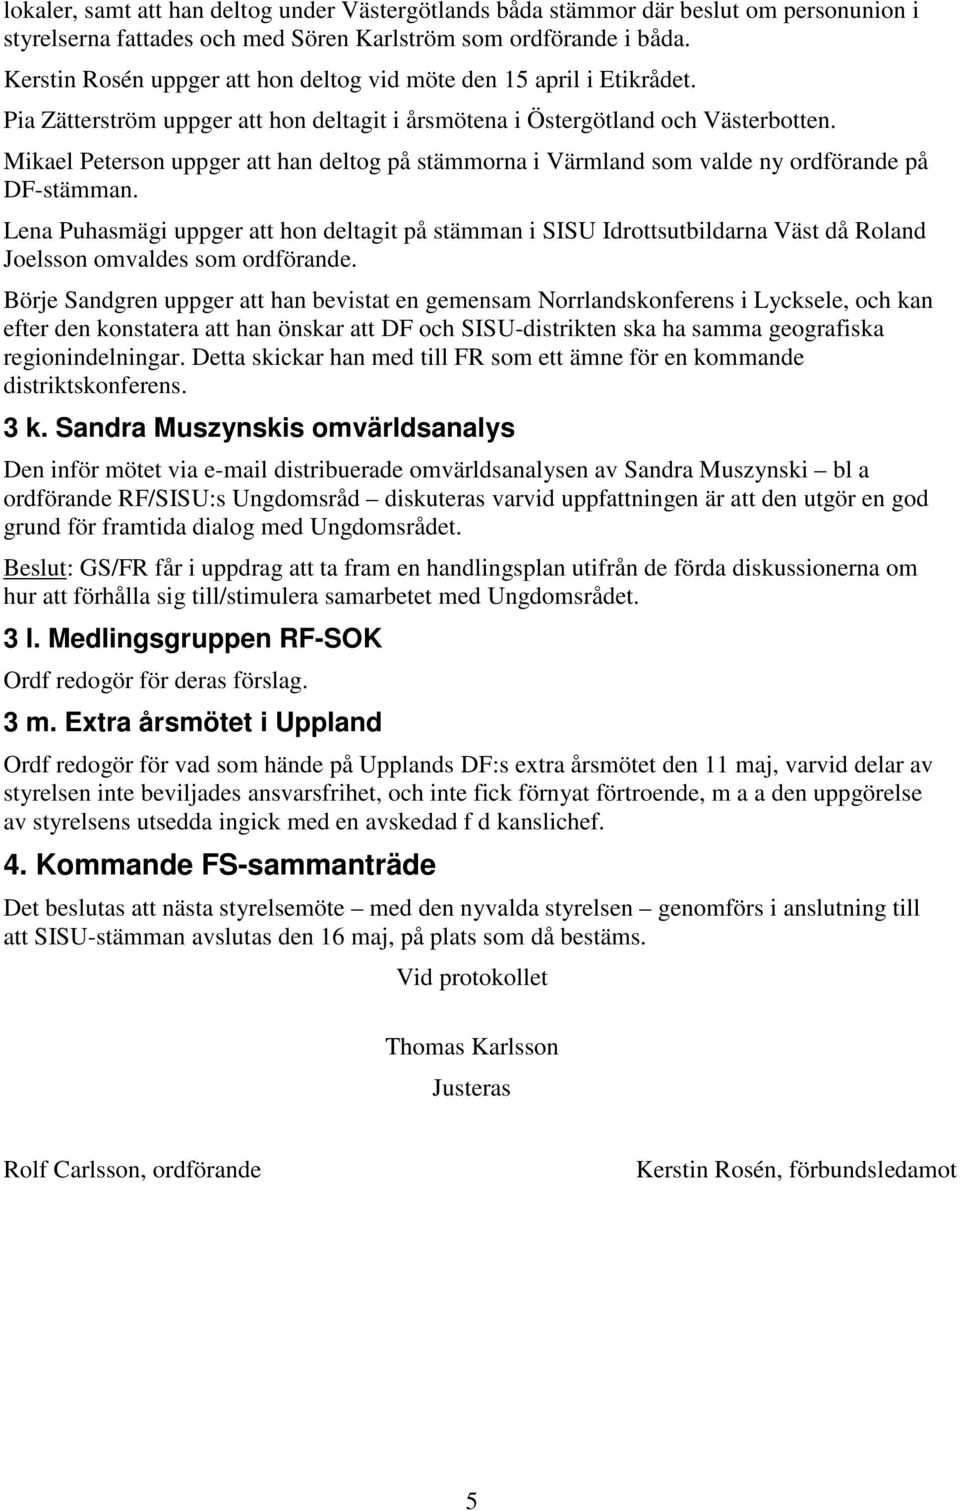 Mikael Peterson uppger att han deltog på stämmorna i Värmland som valde ny ordförande på DF-stämman.